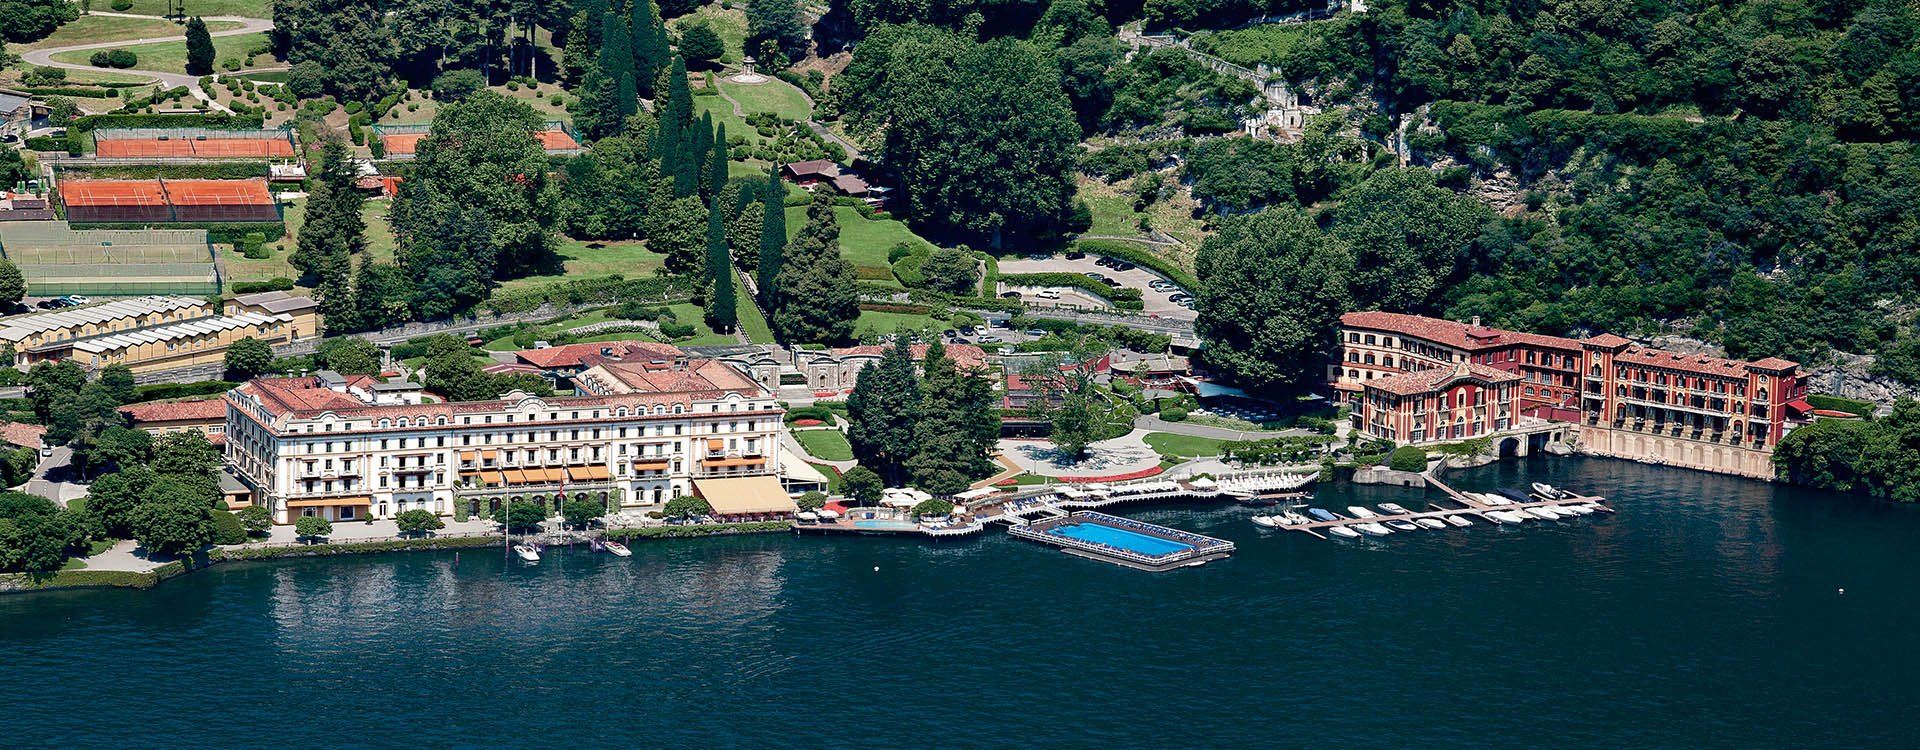 Italy_Lake Como_Villa d'Este